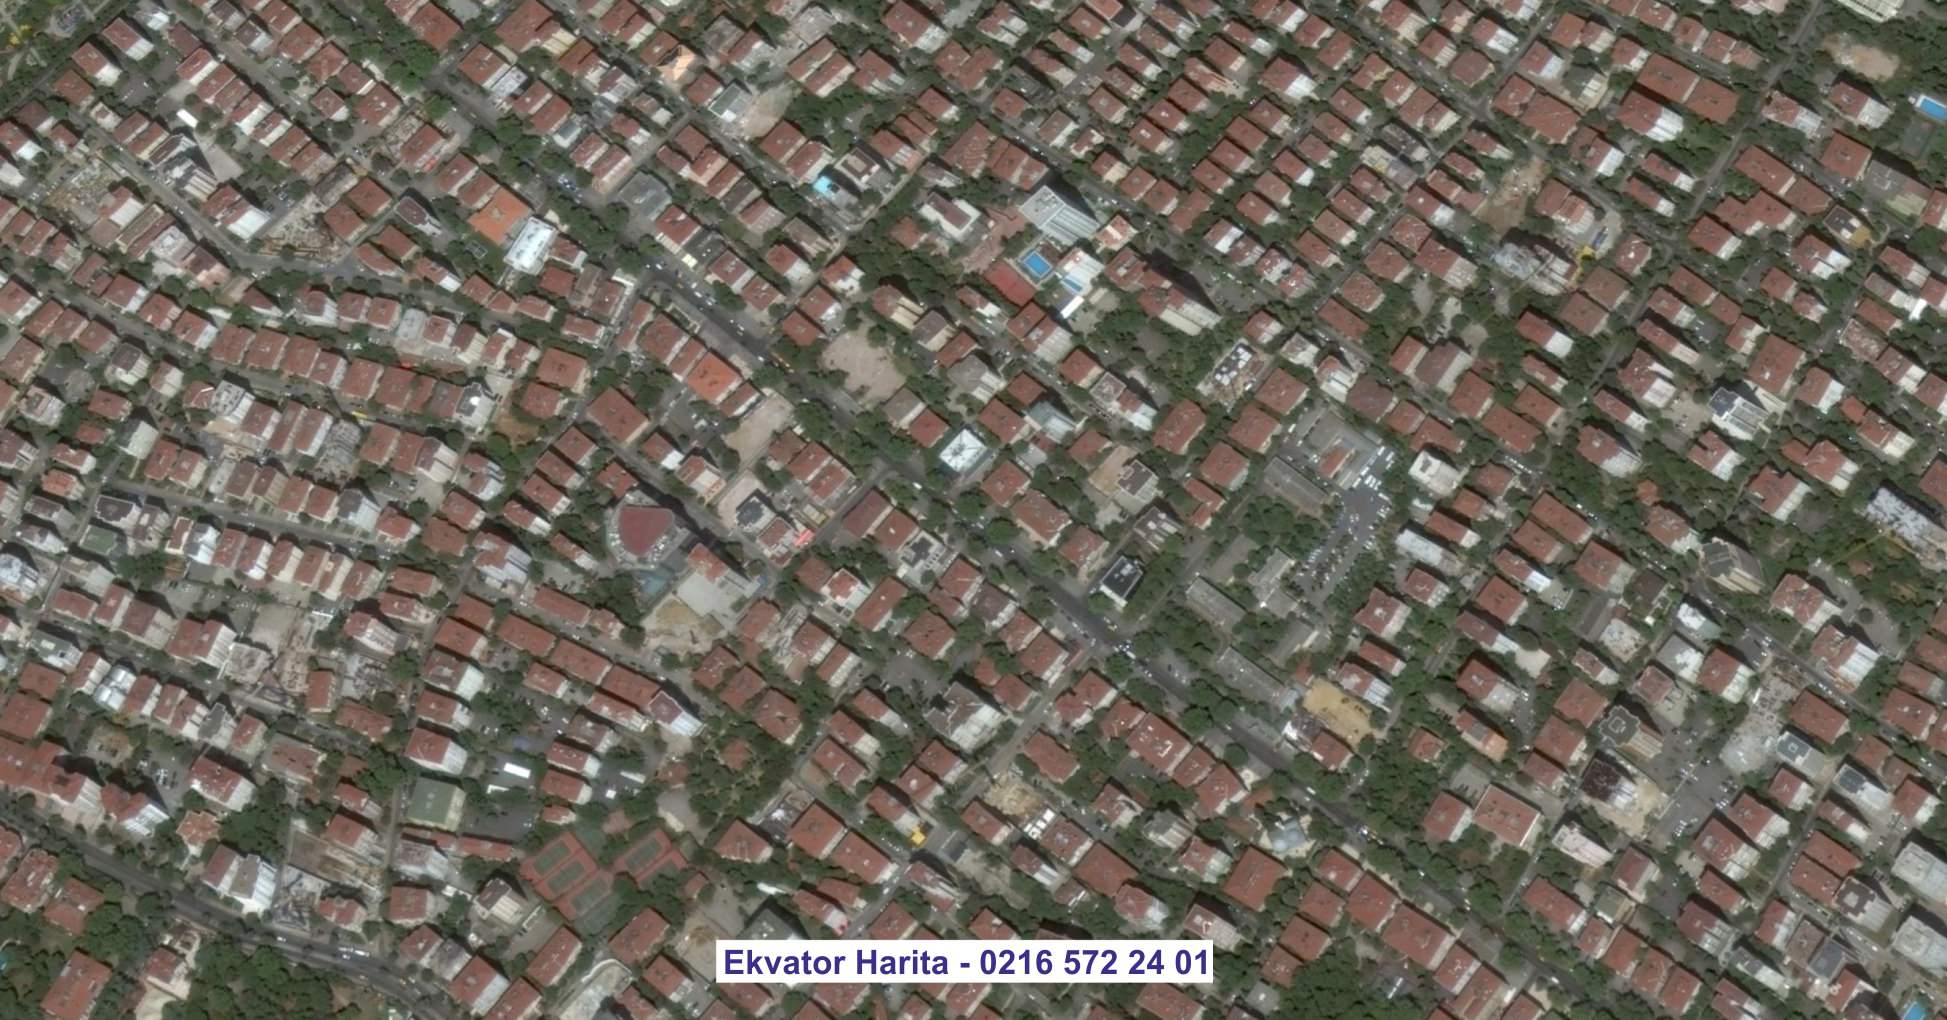 Beykoz Uydu Görüntüsü Örnek Fotoğrafı